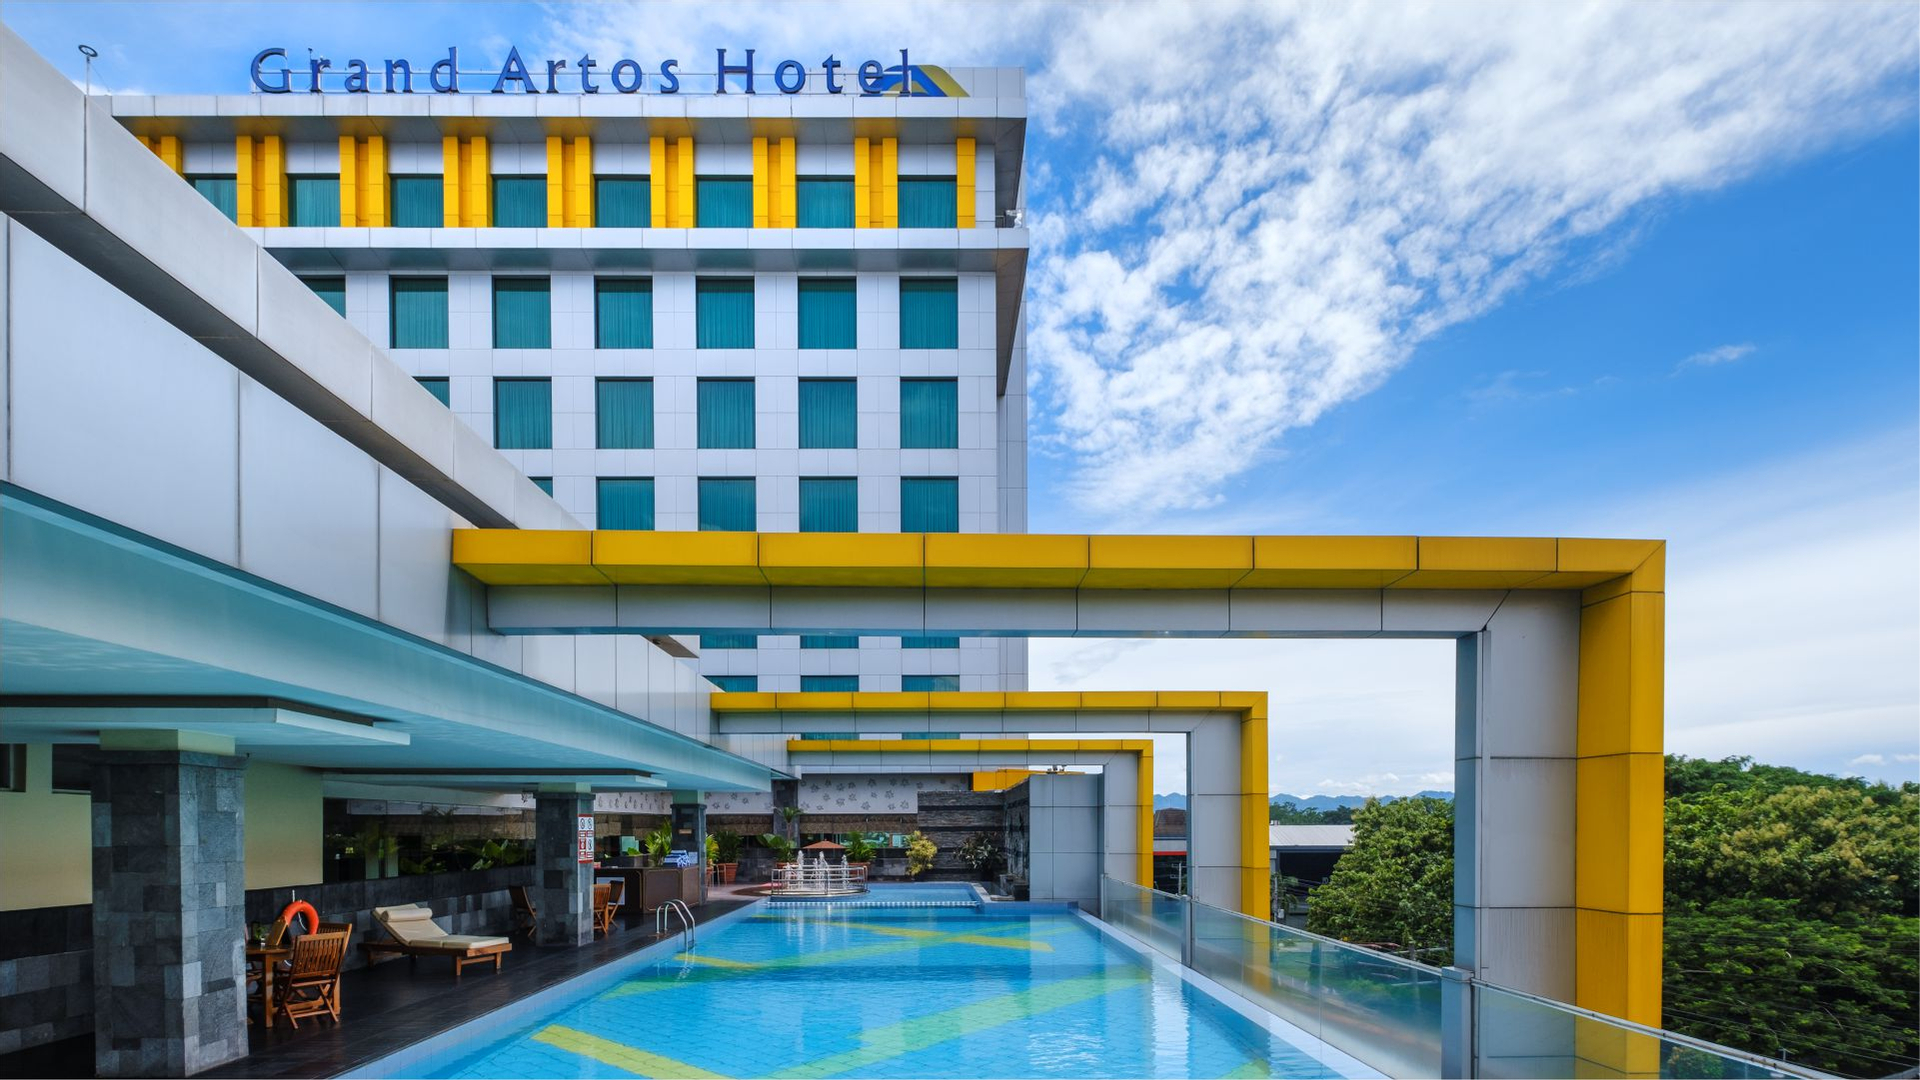 Grand Artos Hotel and Convention Magelang, Magelang